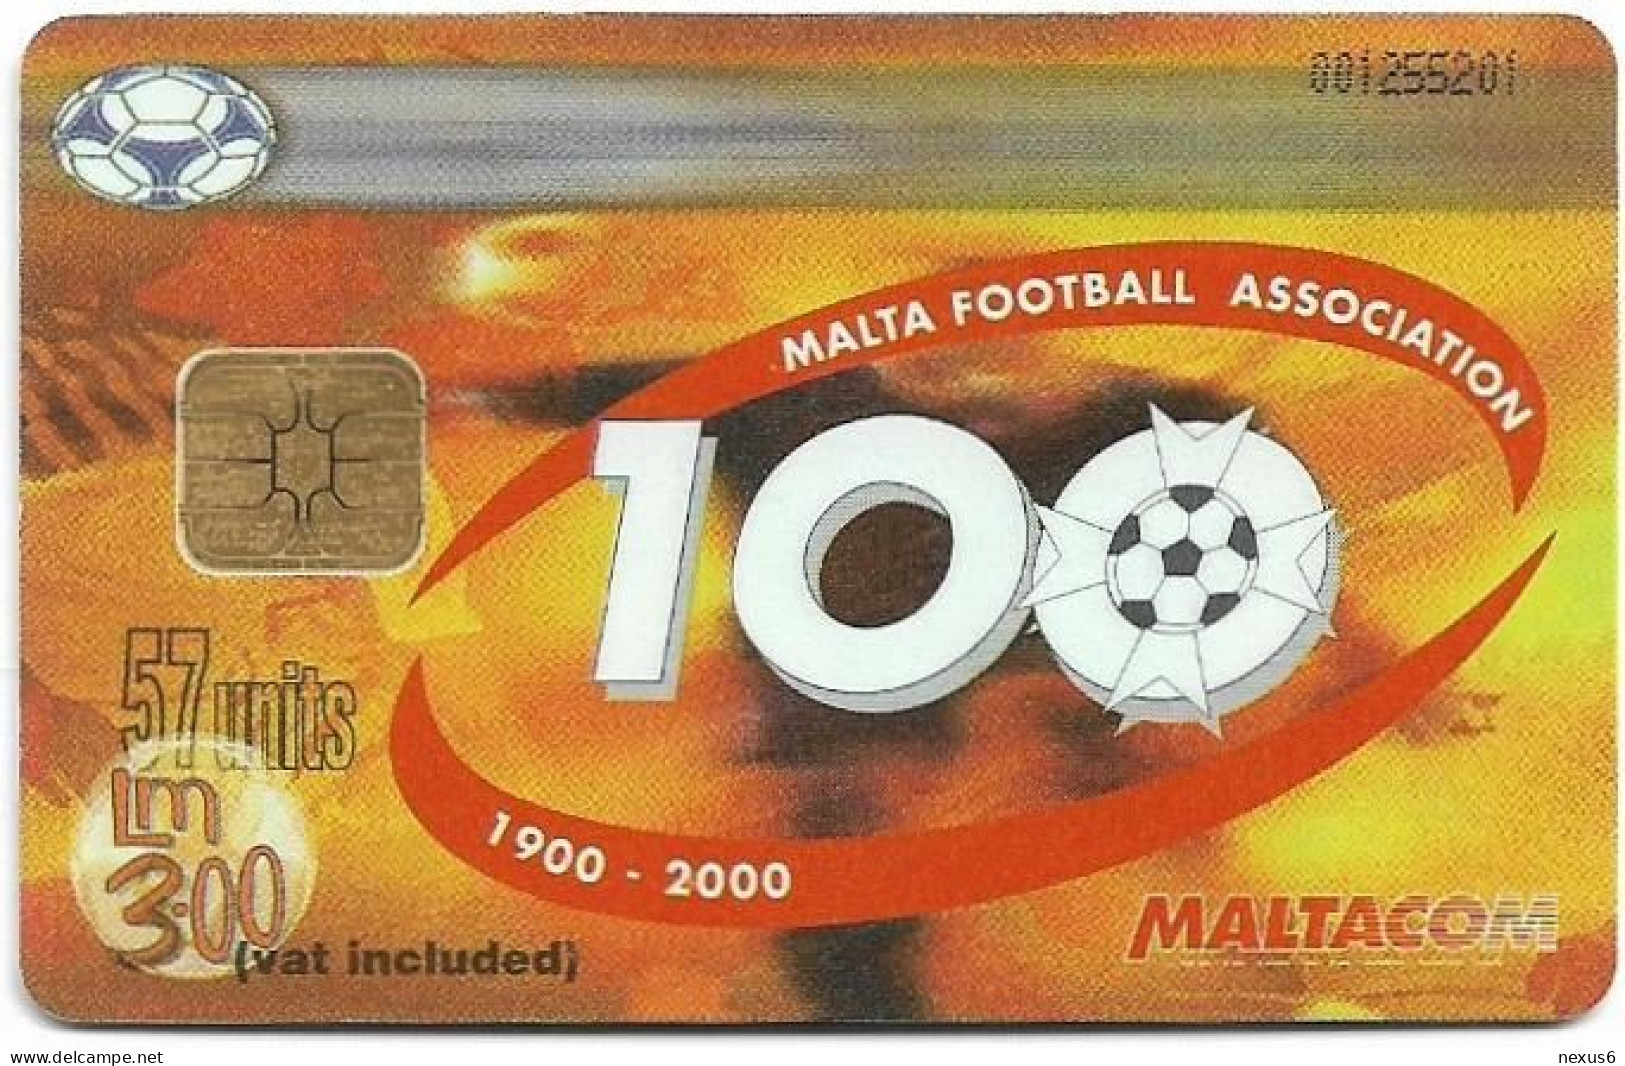 Malta - Maltacom - Malta Football Association 100 Years, 08.2000, 57U, 10.000ex, Used - Malta